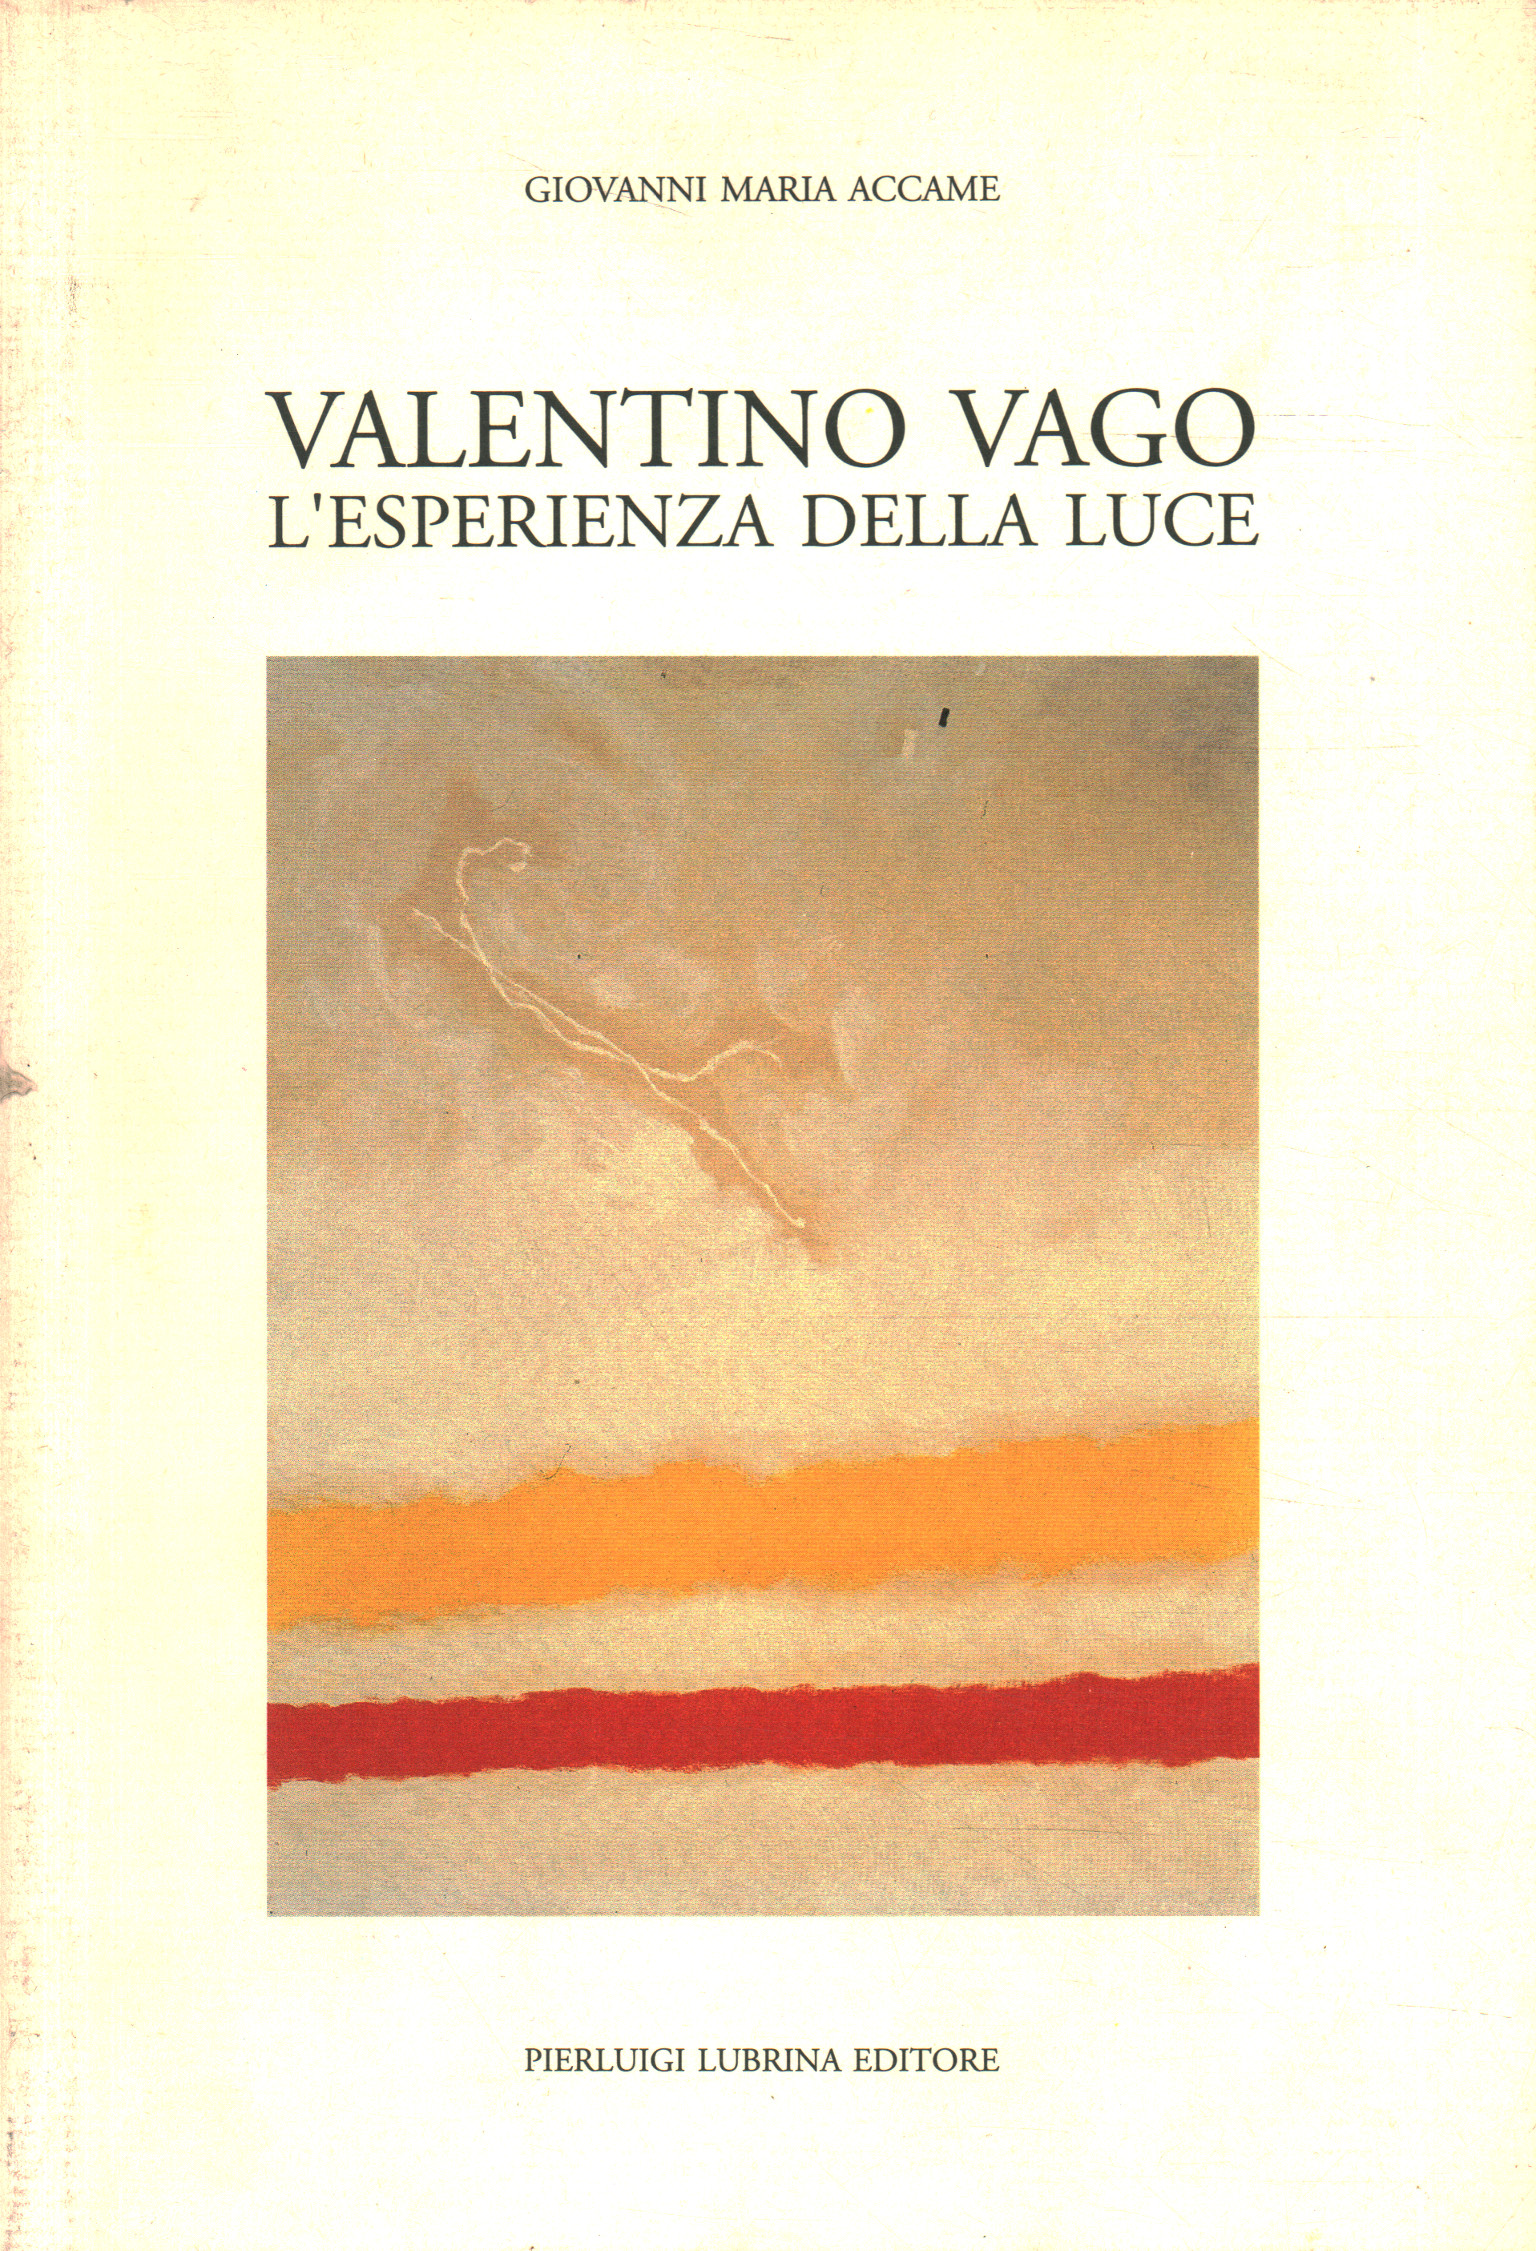 Valentino Vago. The experience of